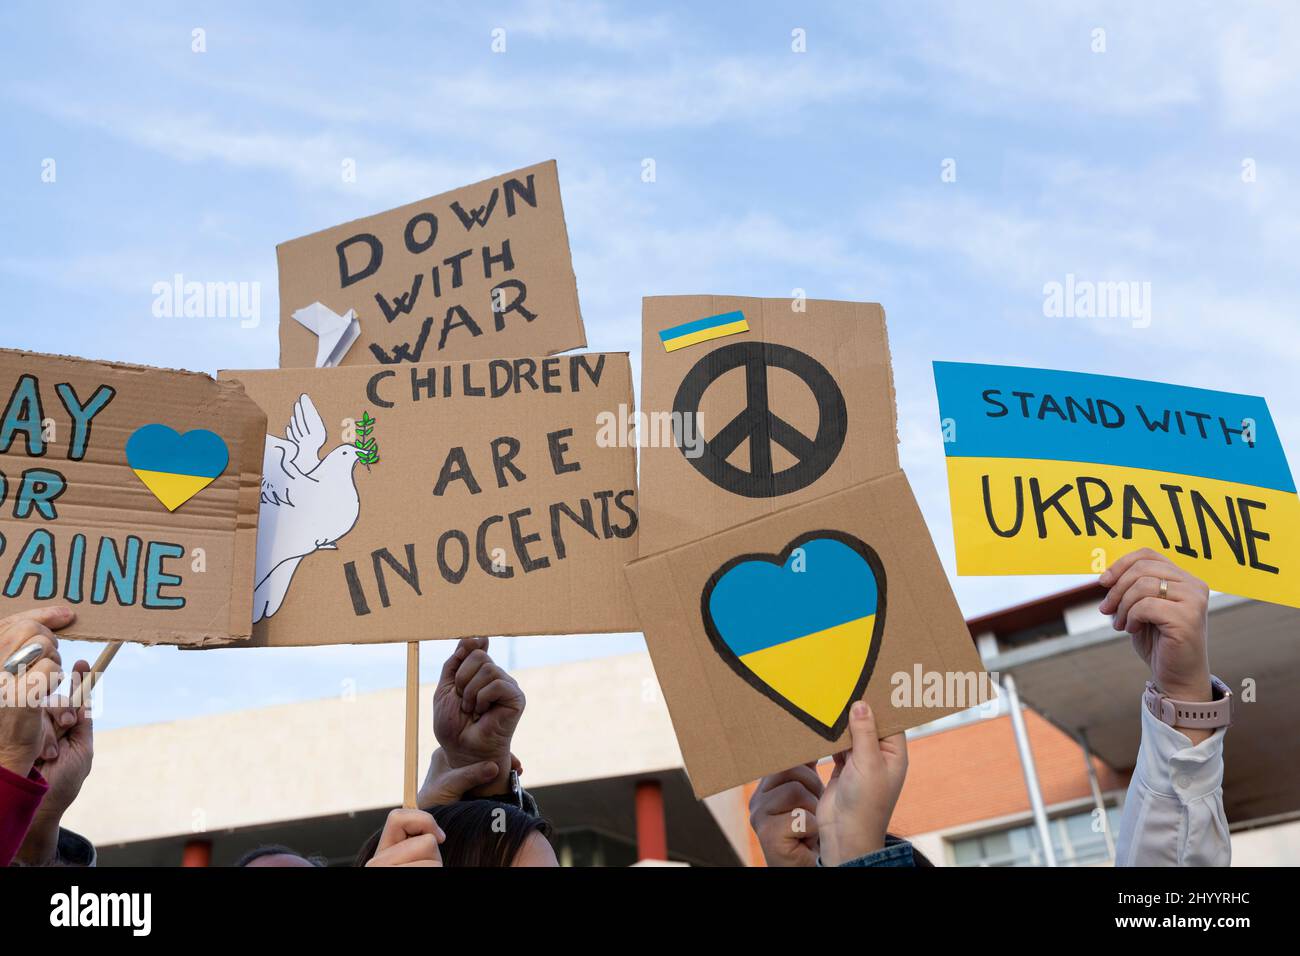 Verschiedene Banner bei der Protestdemonstration gegen die russische Invasion. Zeichen des Friedens, nicht des Krieges, und Botschaften der Solidarität und Unterstützung für das Vereinigte Königreich Stockfoto